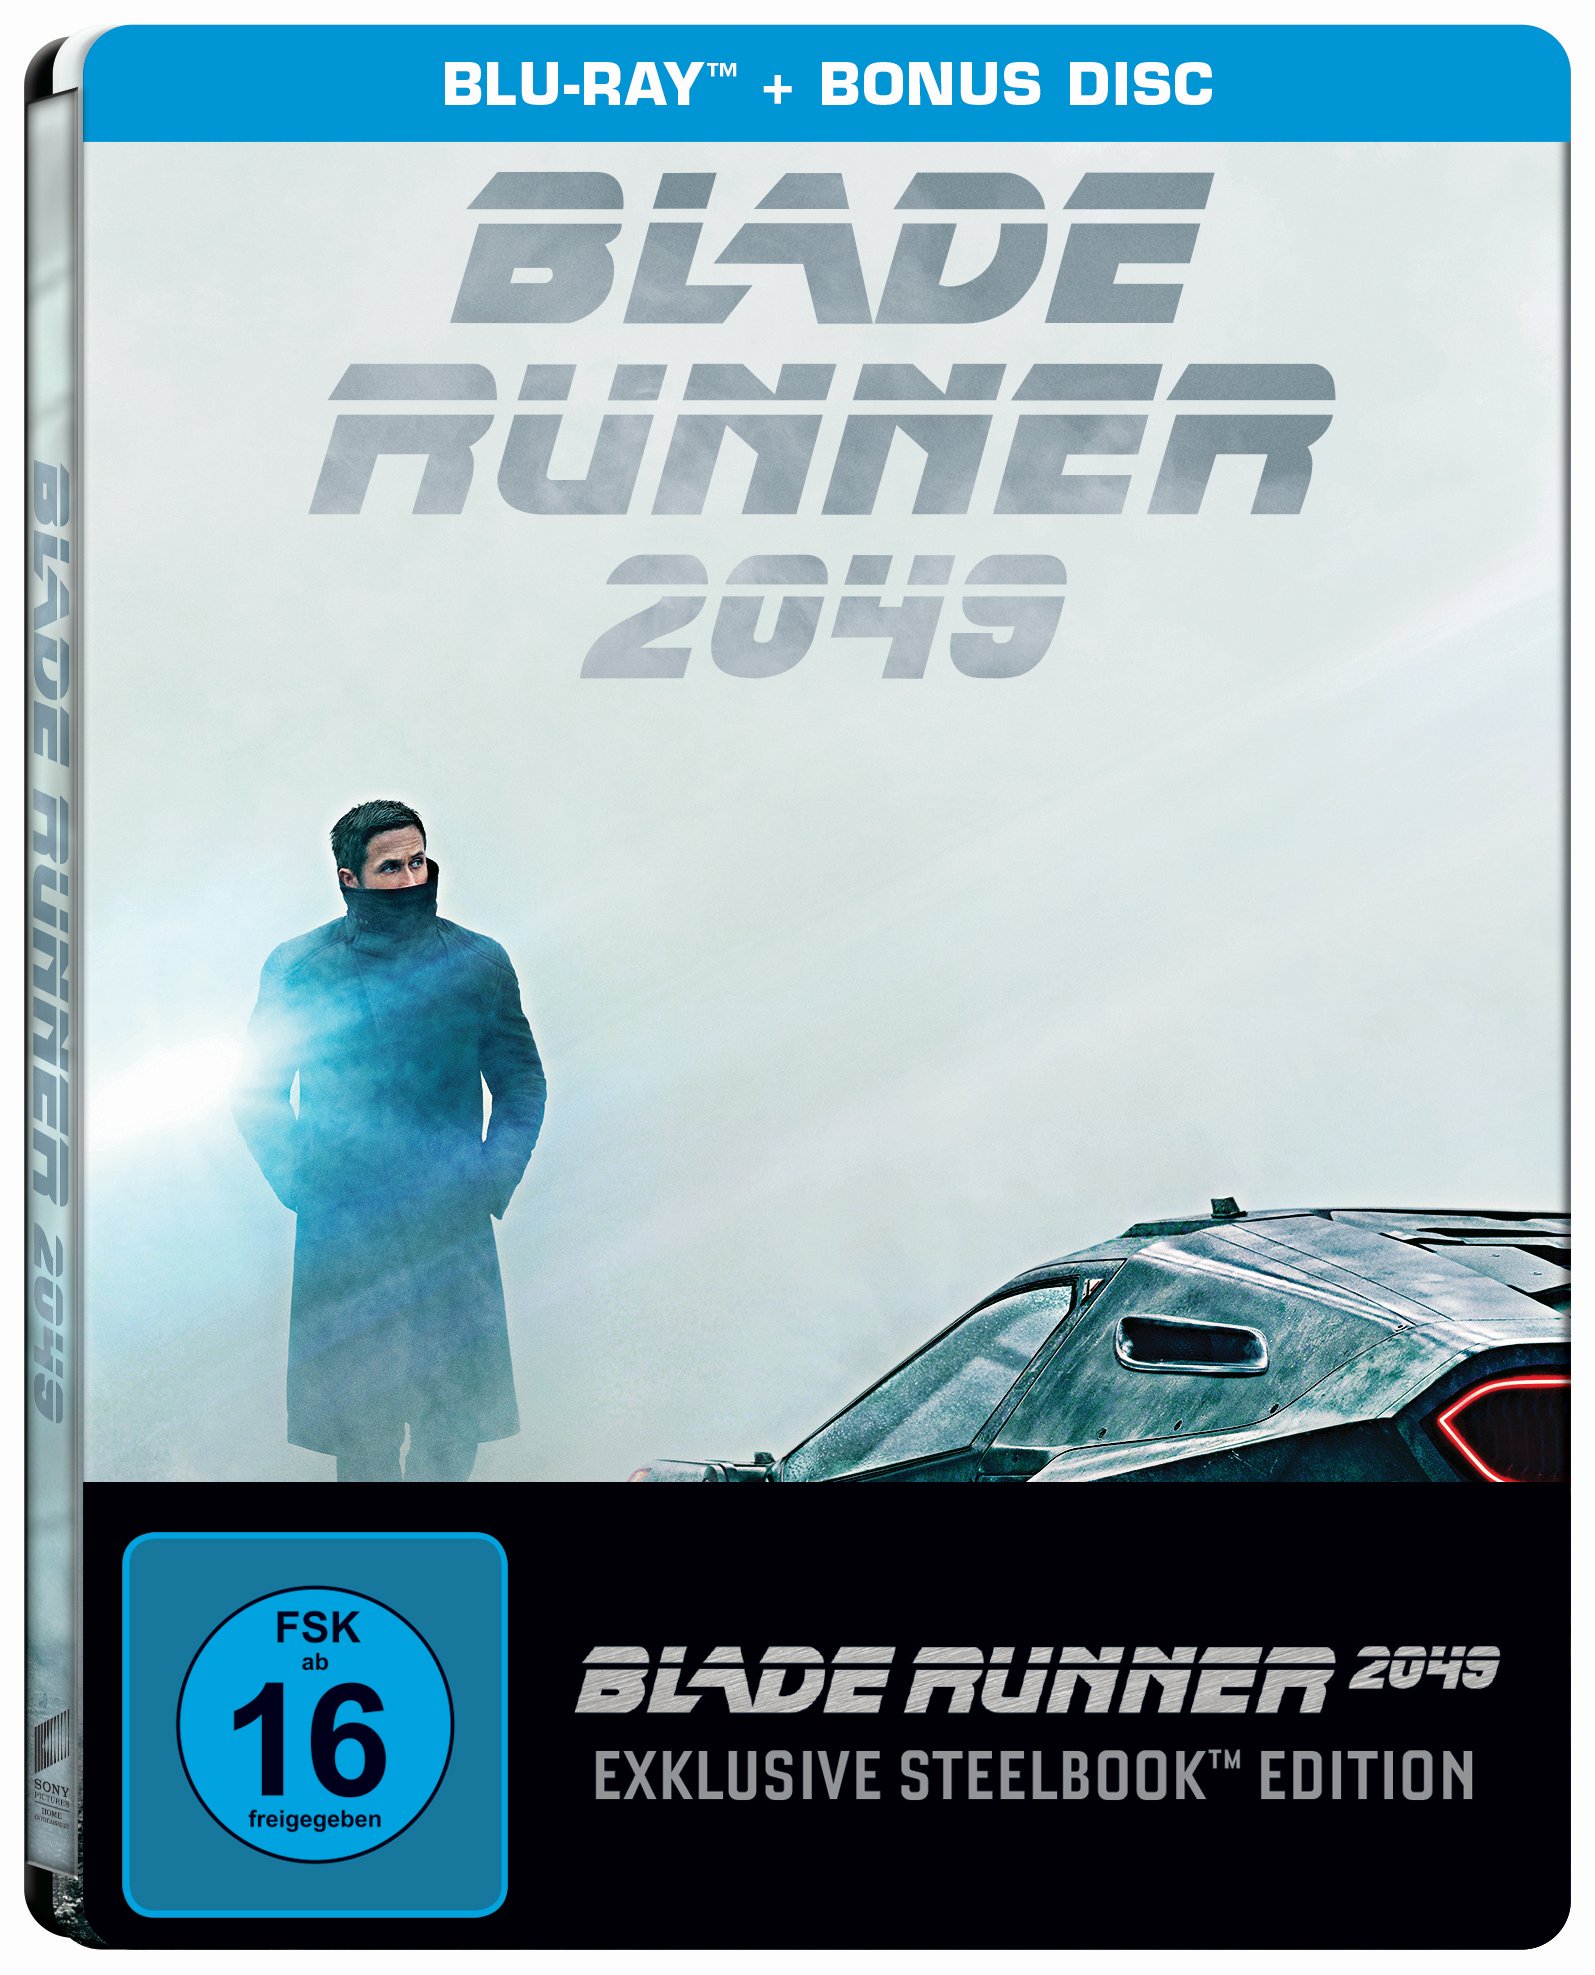 Blade Runner 2049 Steelbook.jpg